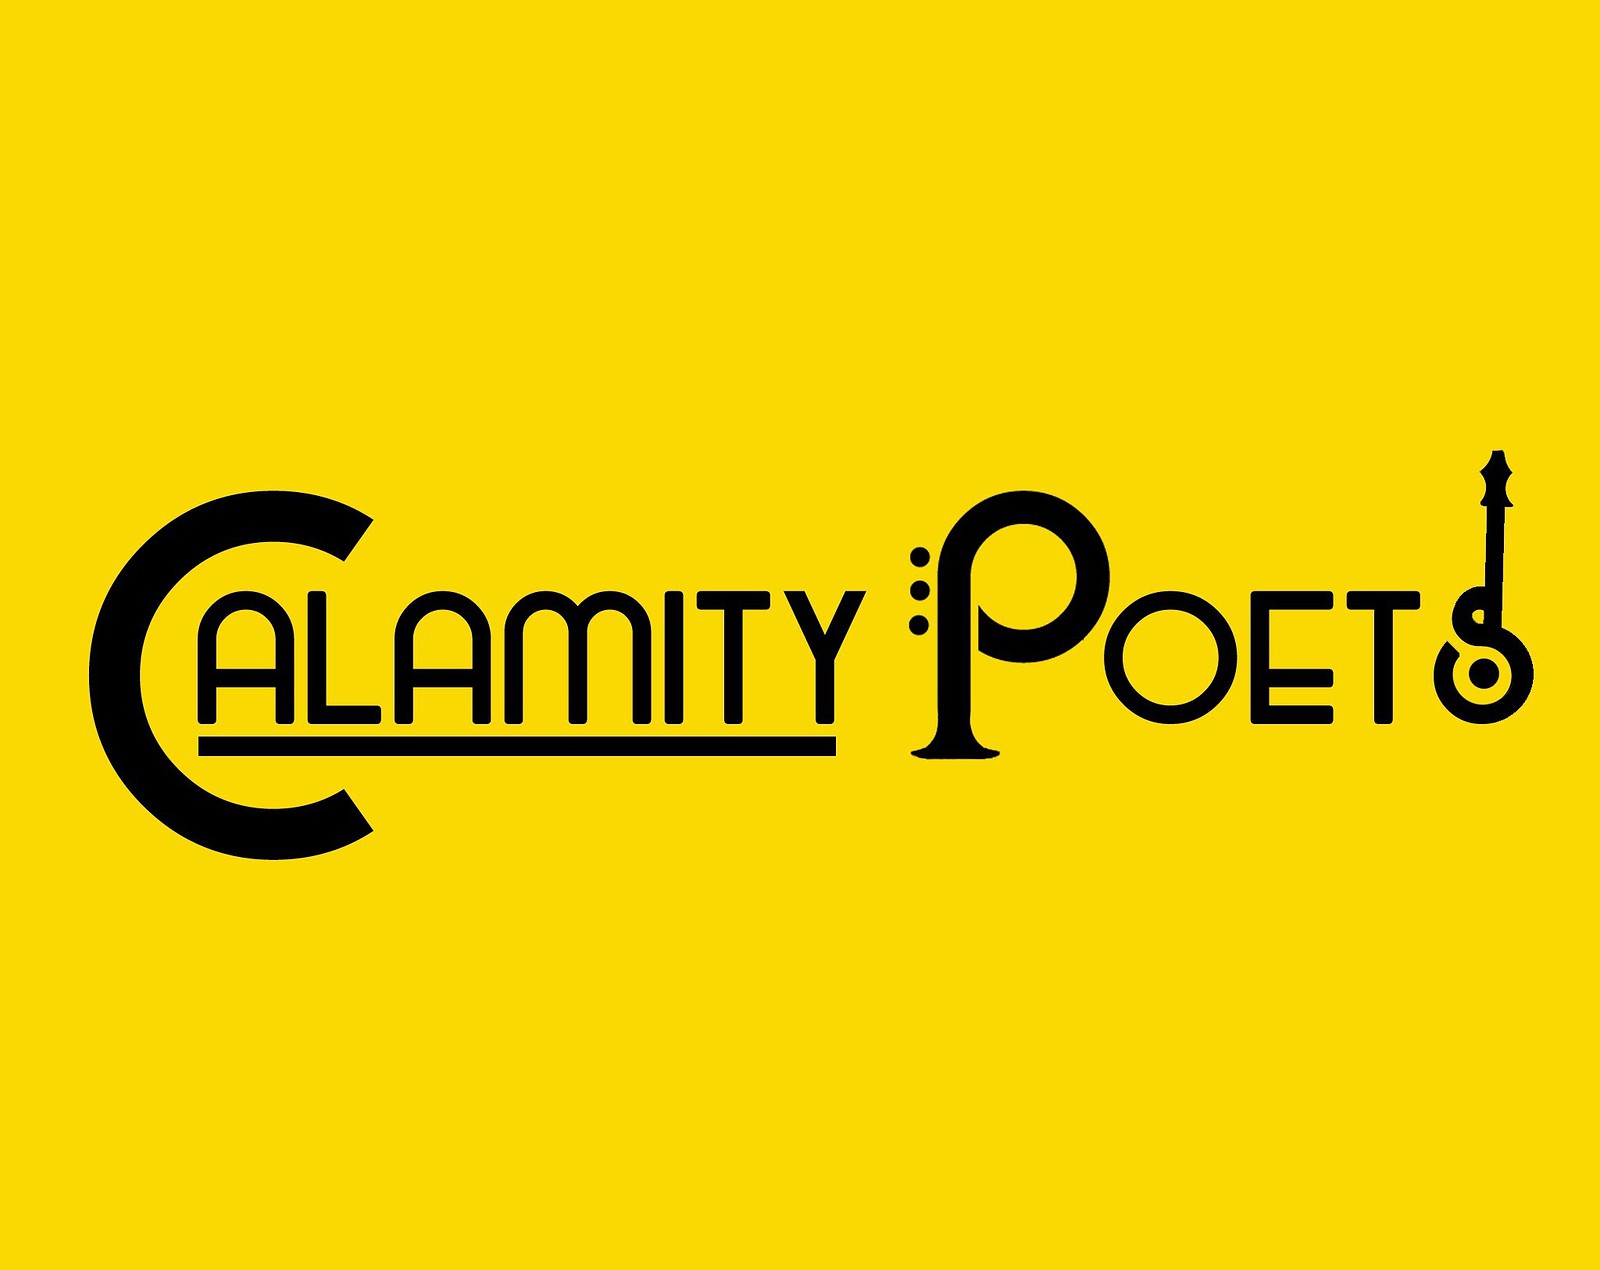 Calamity Poets at The Louisiana